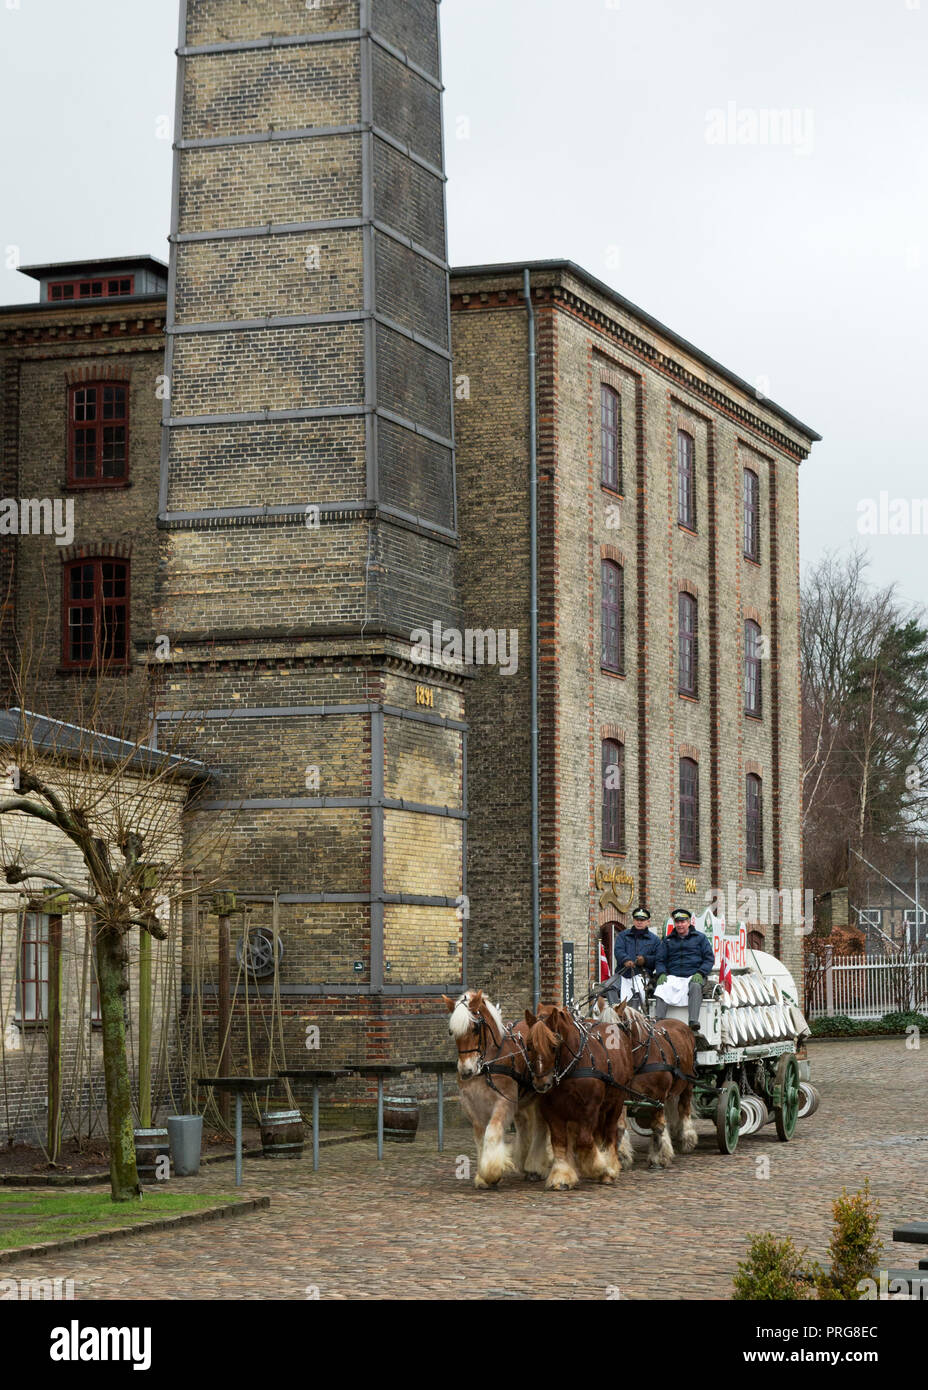 Projet de projet de lourds chevaux travaillant au Jutland rares brasserie Carlsberg historique, Copenhague, Danemark Banque D'Images